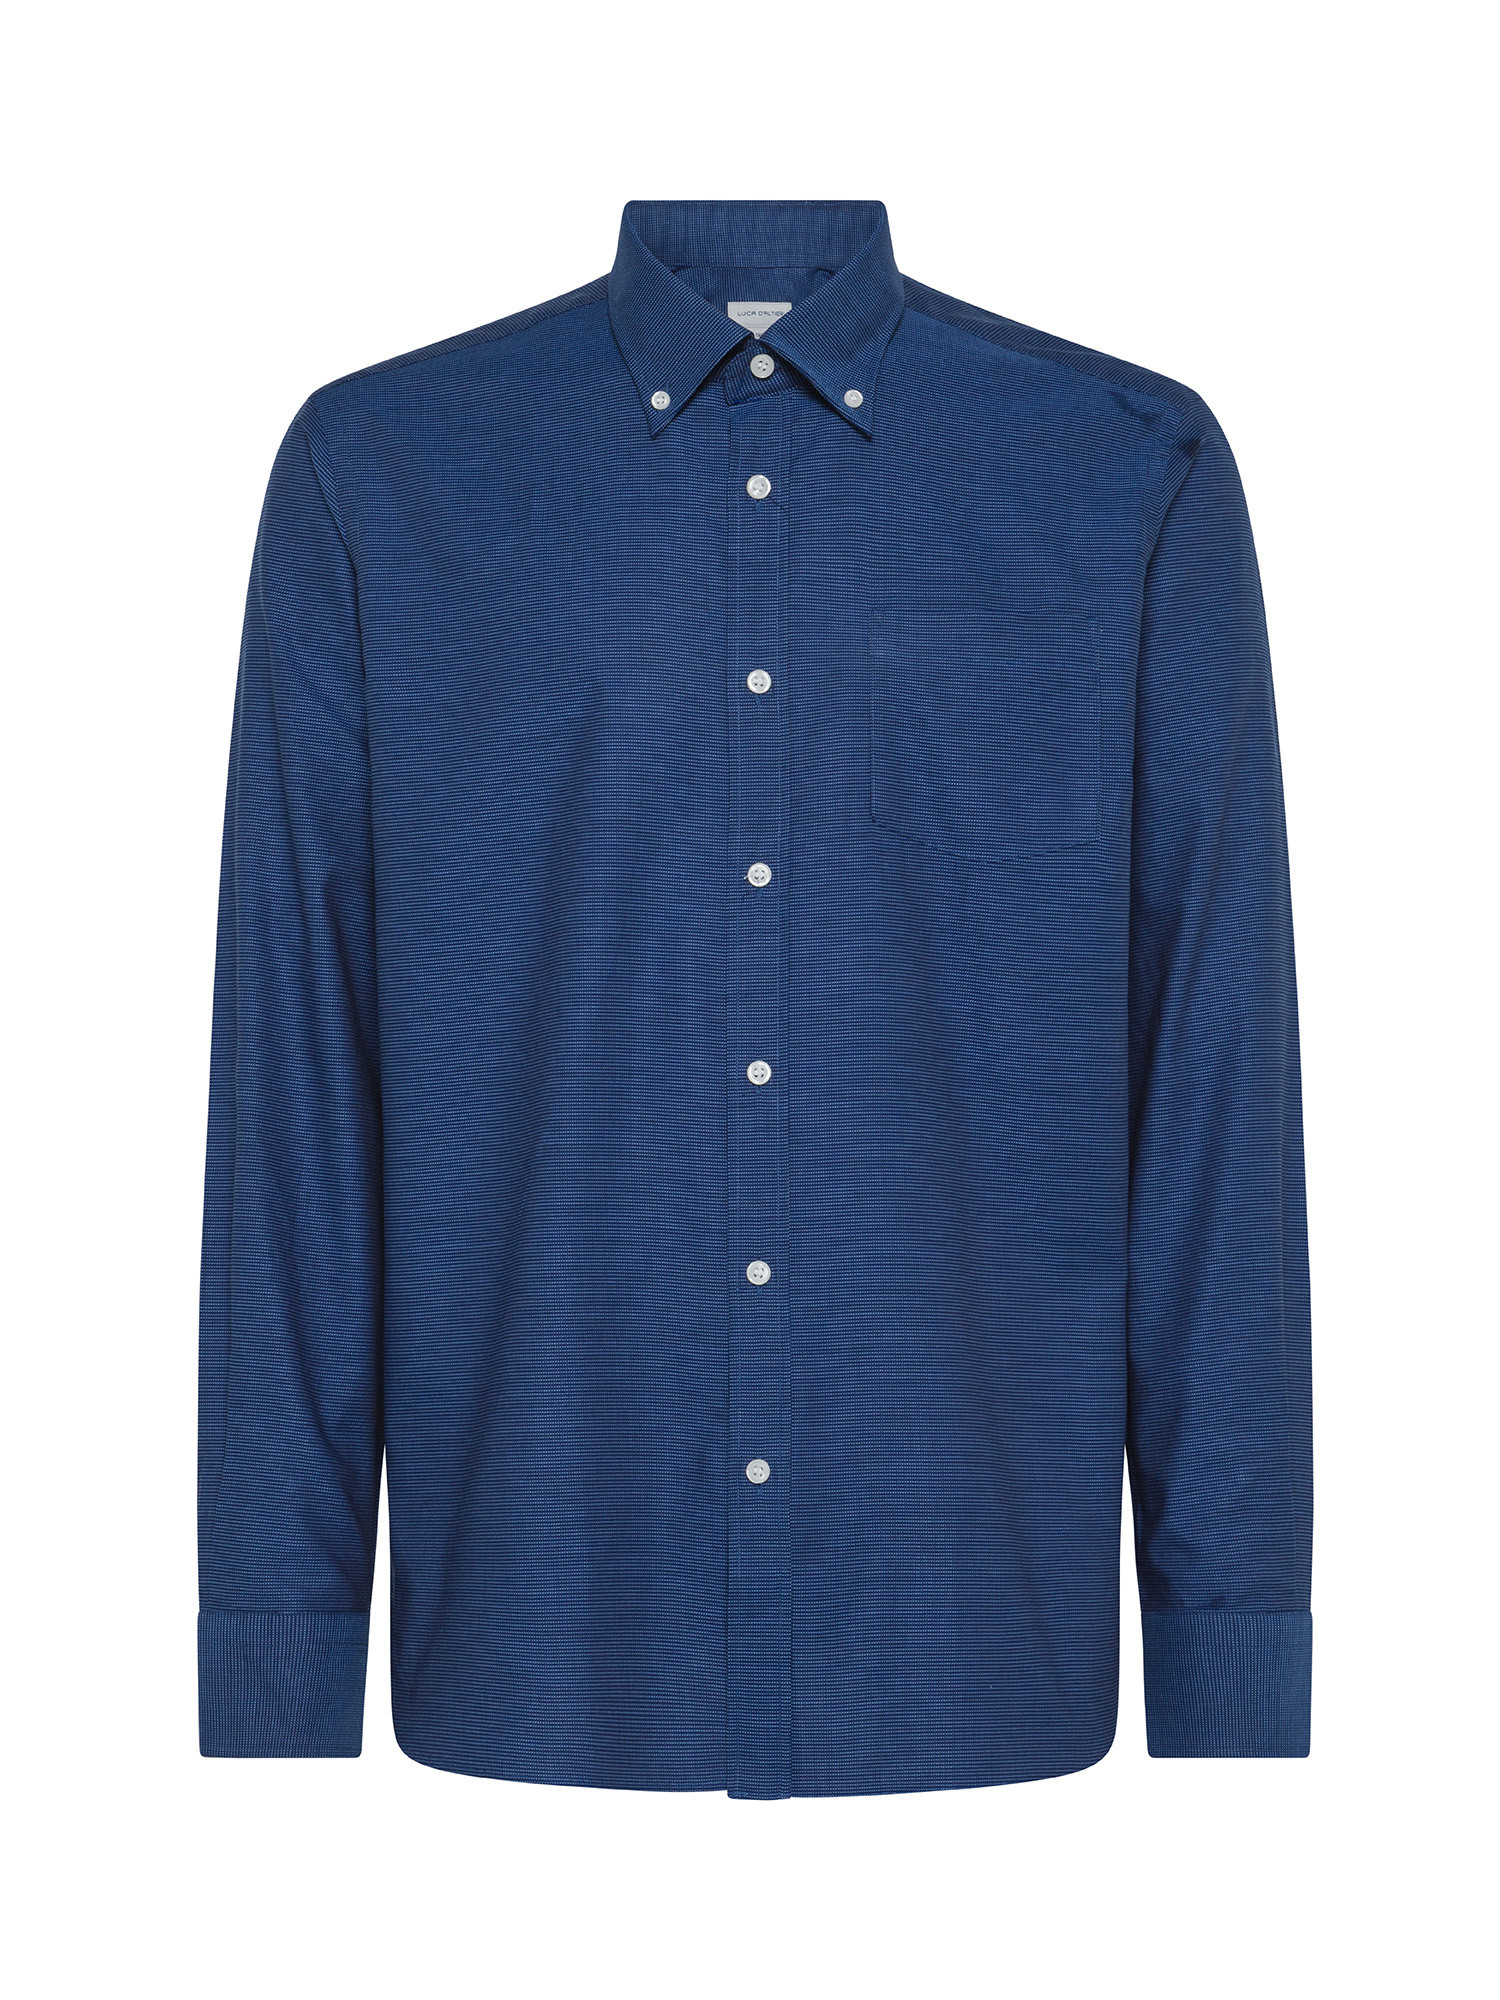 Luca D'Altieri - Camicia tailor fit in puro cotone, Blu, large image number 0